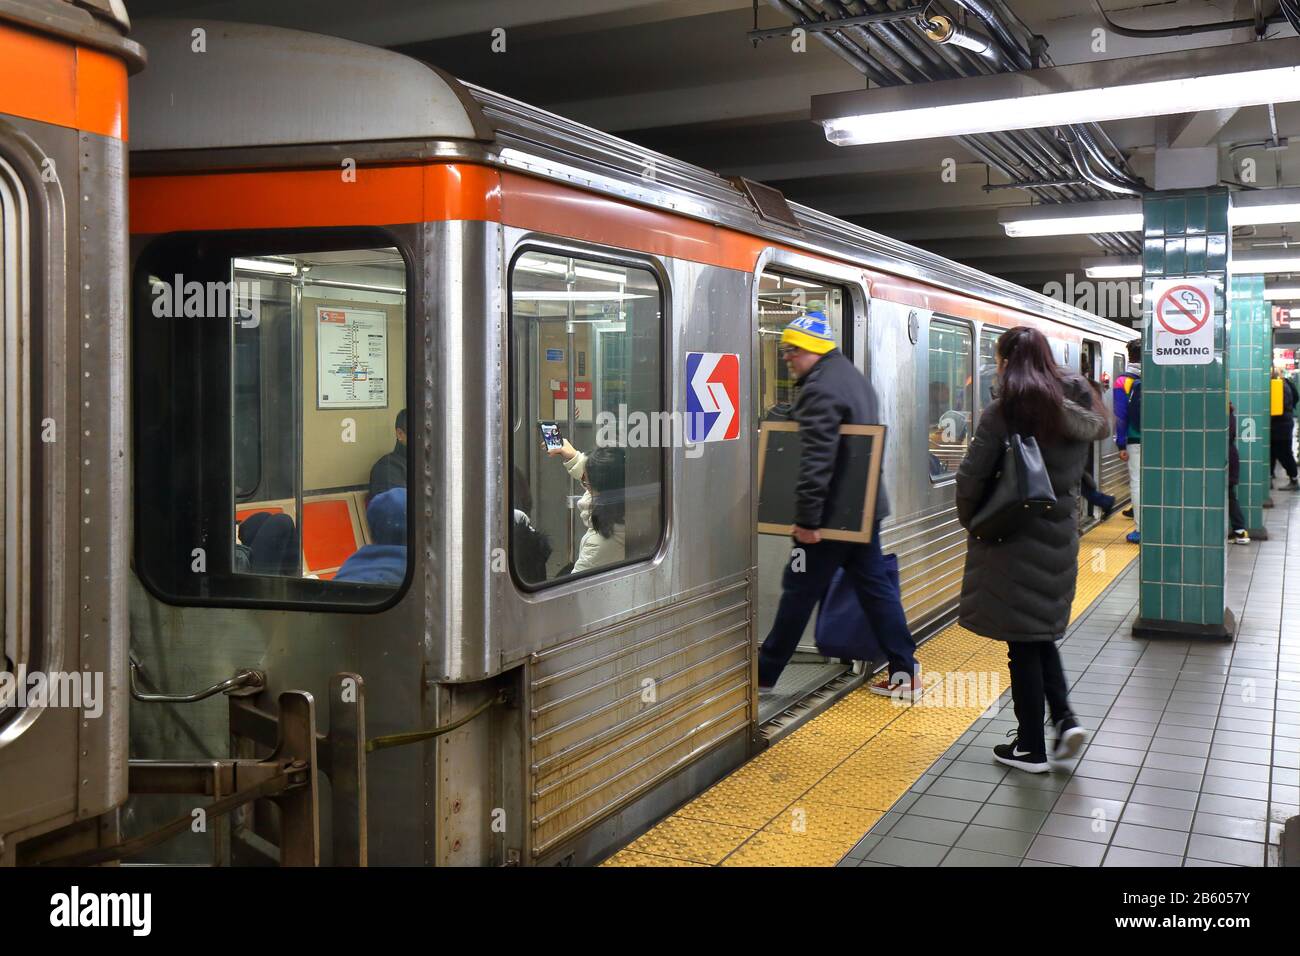 Les gens embarquant dans un train de métro SEPTA Broad Street Line à Tasker Morris, à South Philly, Philadelphie, PA. 29 Février 2020. Banque D'Images